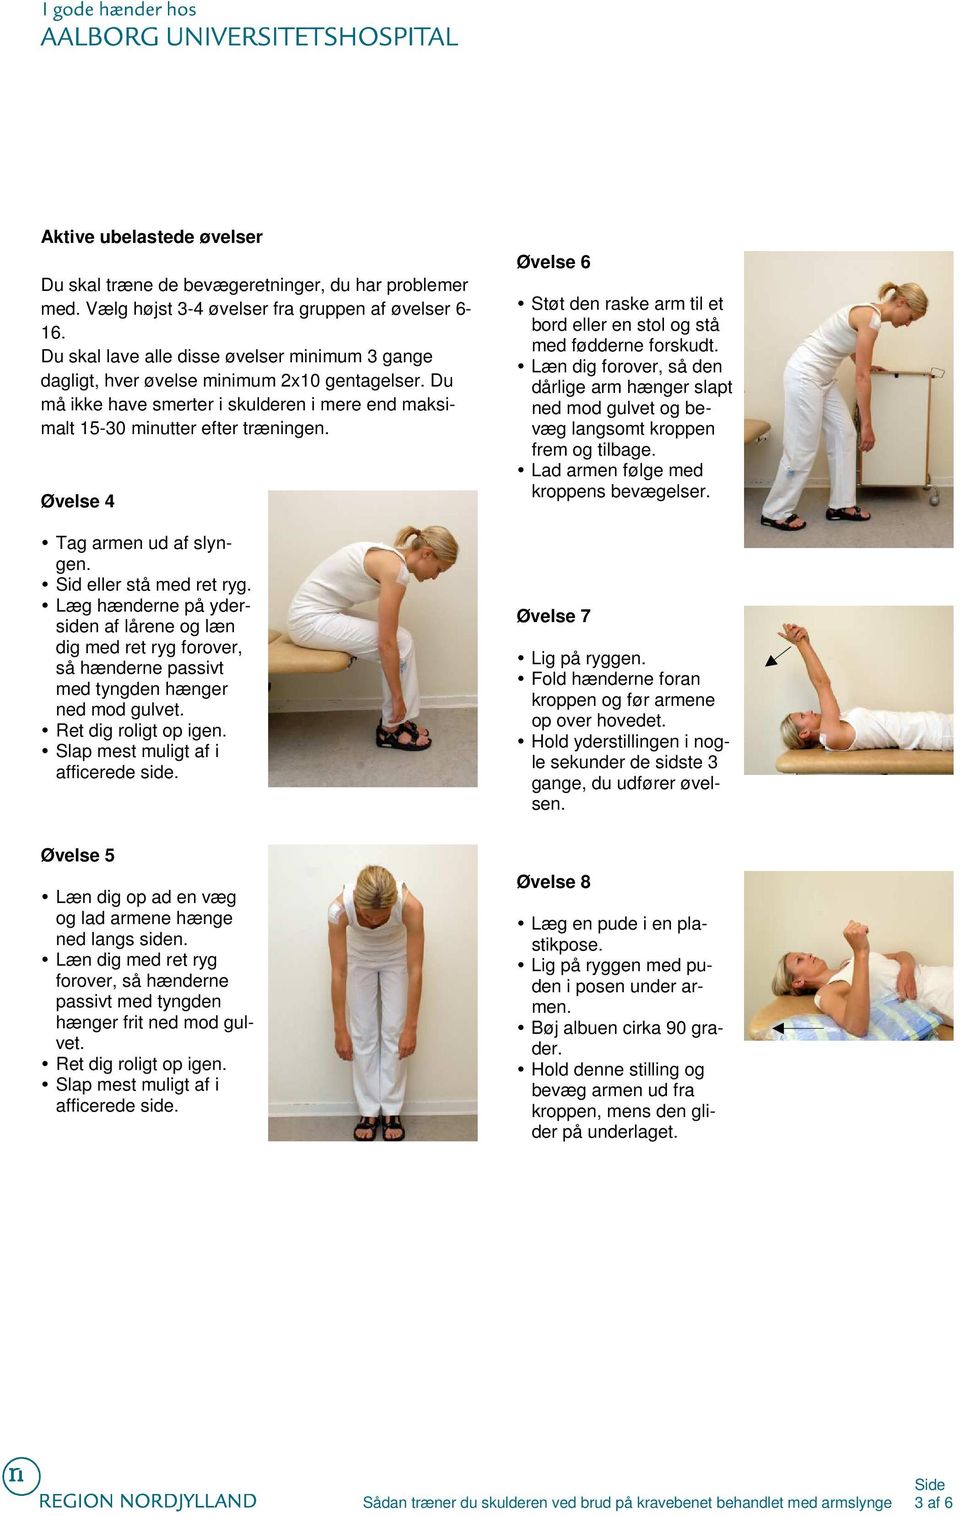 Øvelse 4 Tag armen ud af slyngen. Sid eller stå med ret ryg. Læg hænderne på ydersiden af lårene og læn dig med ret ryg forover, så hænderne passivt med tyngden hænger ned mod gulvet.